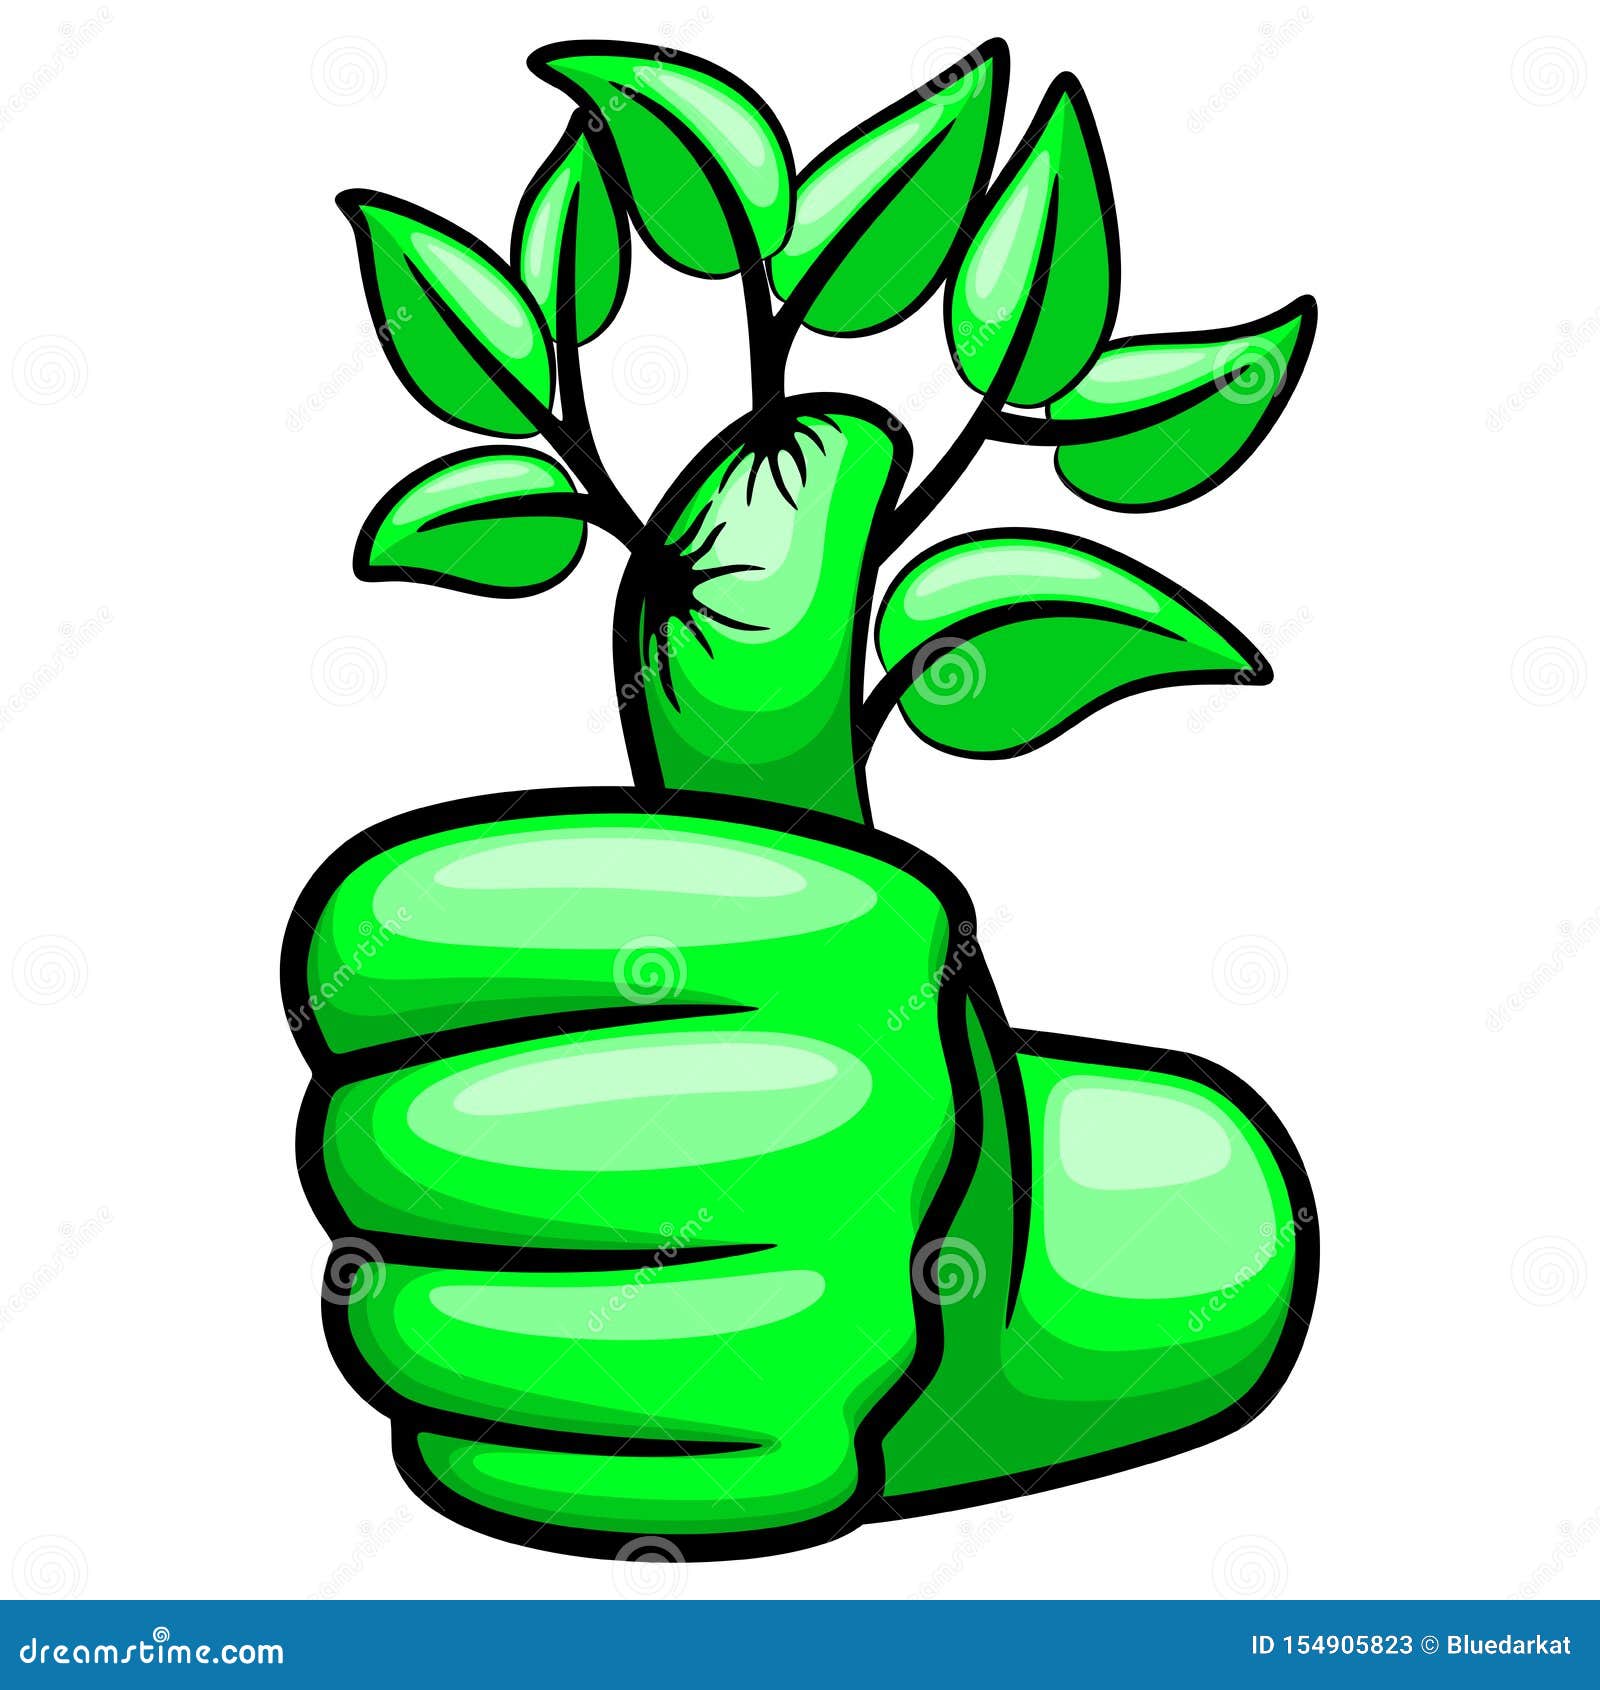 Green thumb cartoon